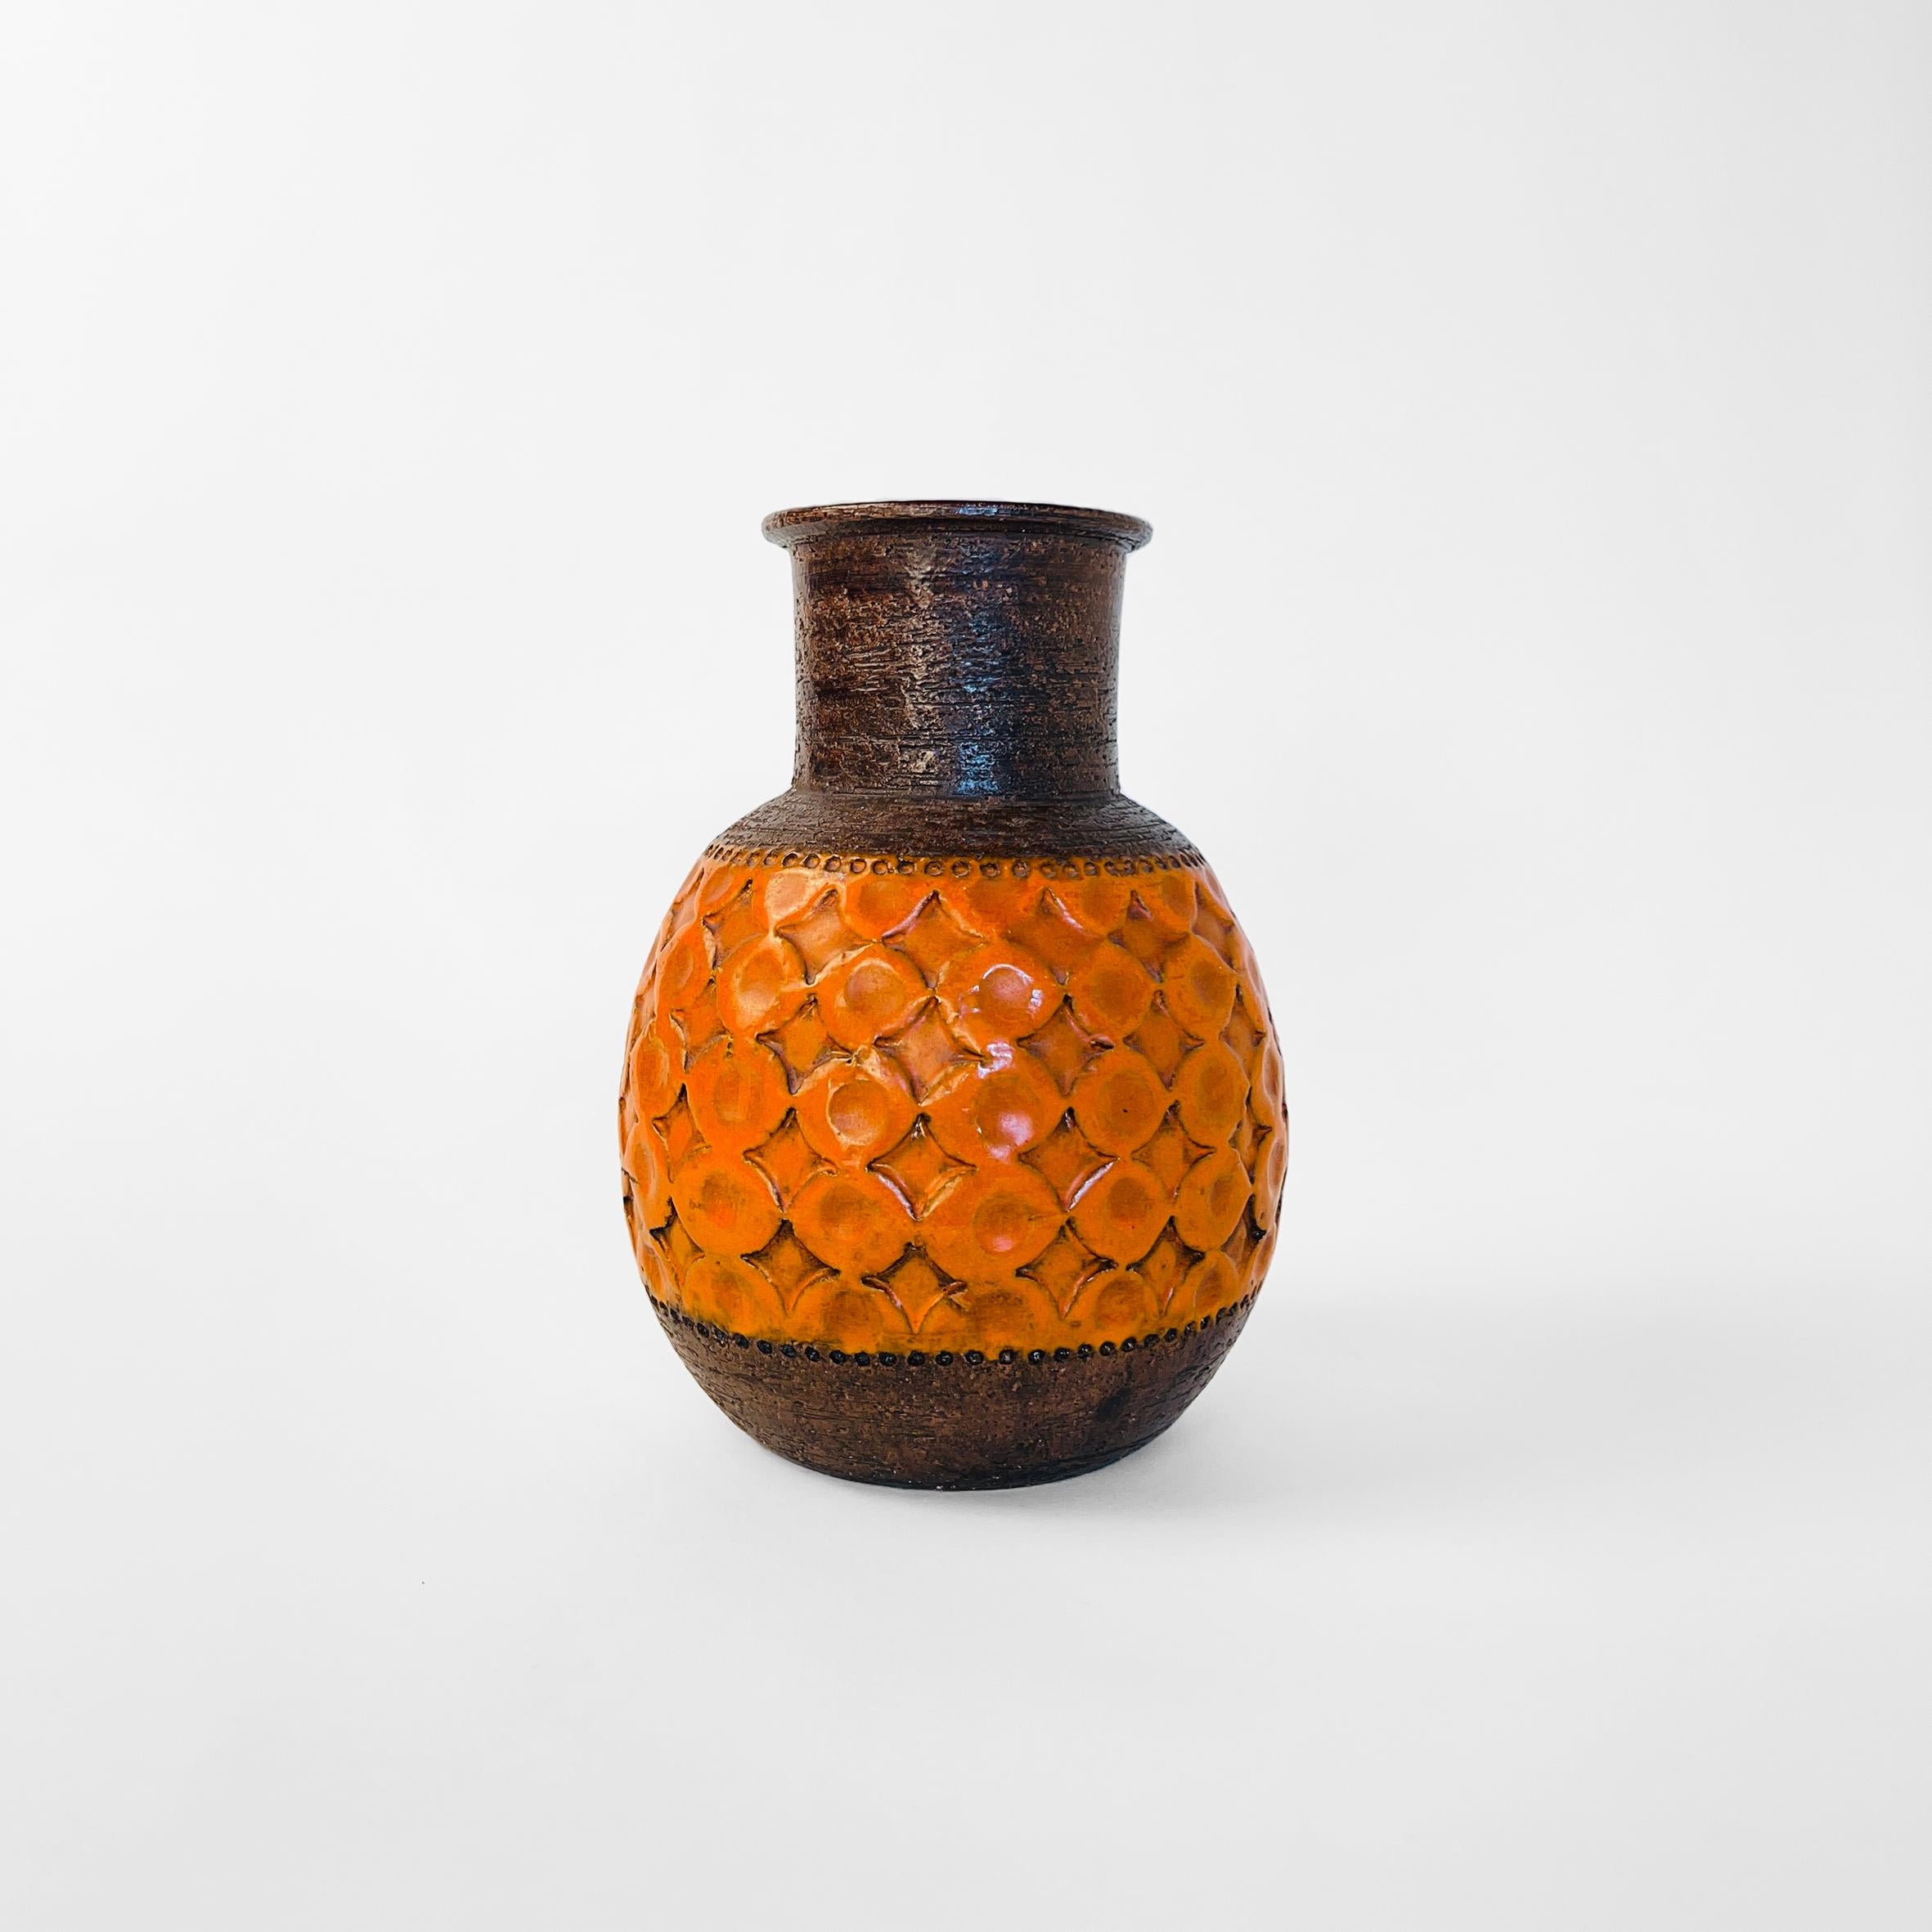 Vase orange de style lave grasse. Fond et col en finition texturée brun foncé et bande de motifs au centre, finition en glaçure orange vif.